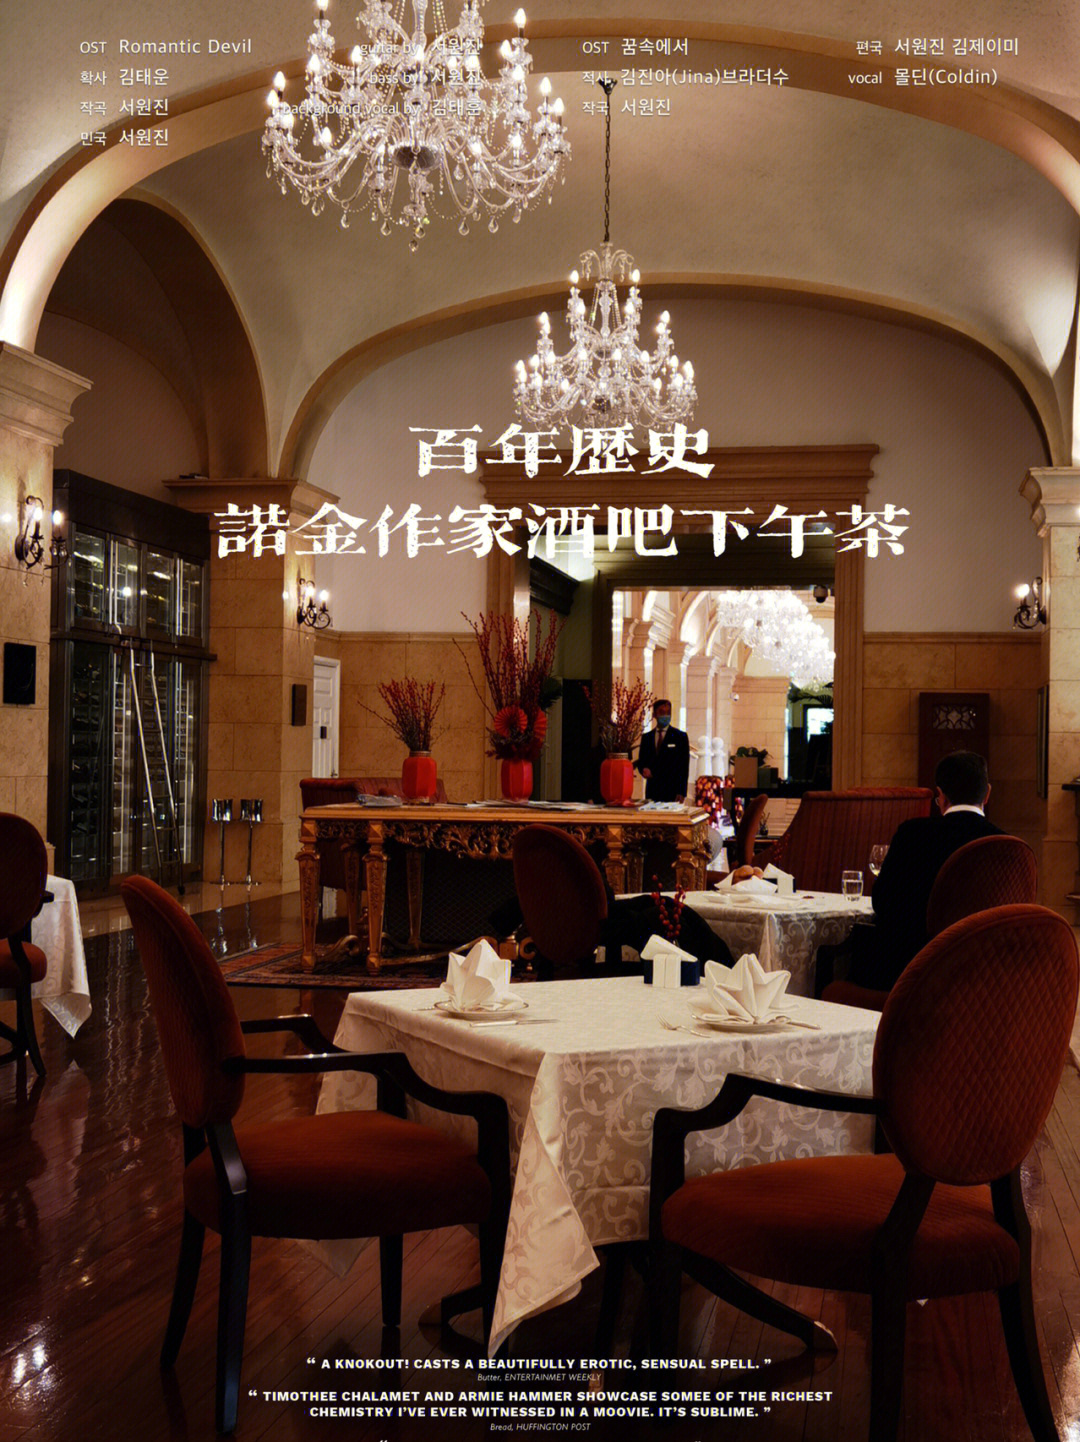 北京饭店诺金作家酒吧图片